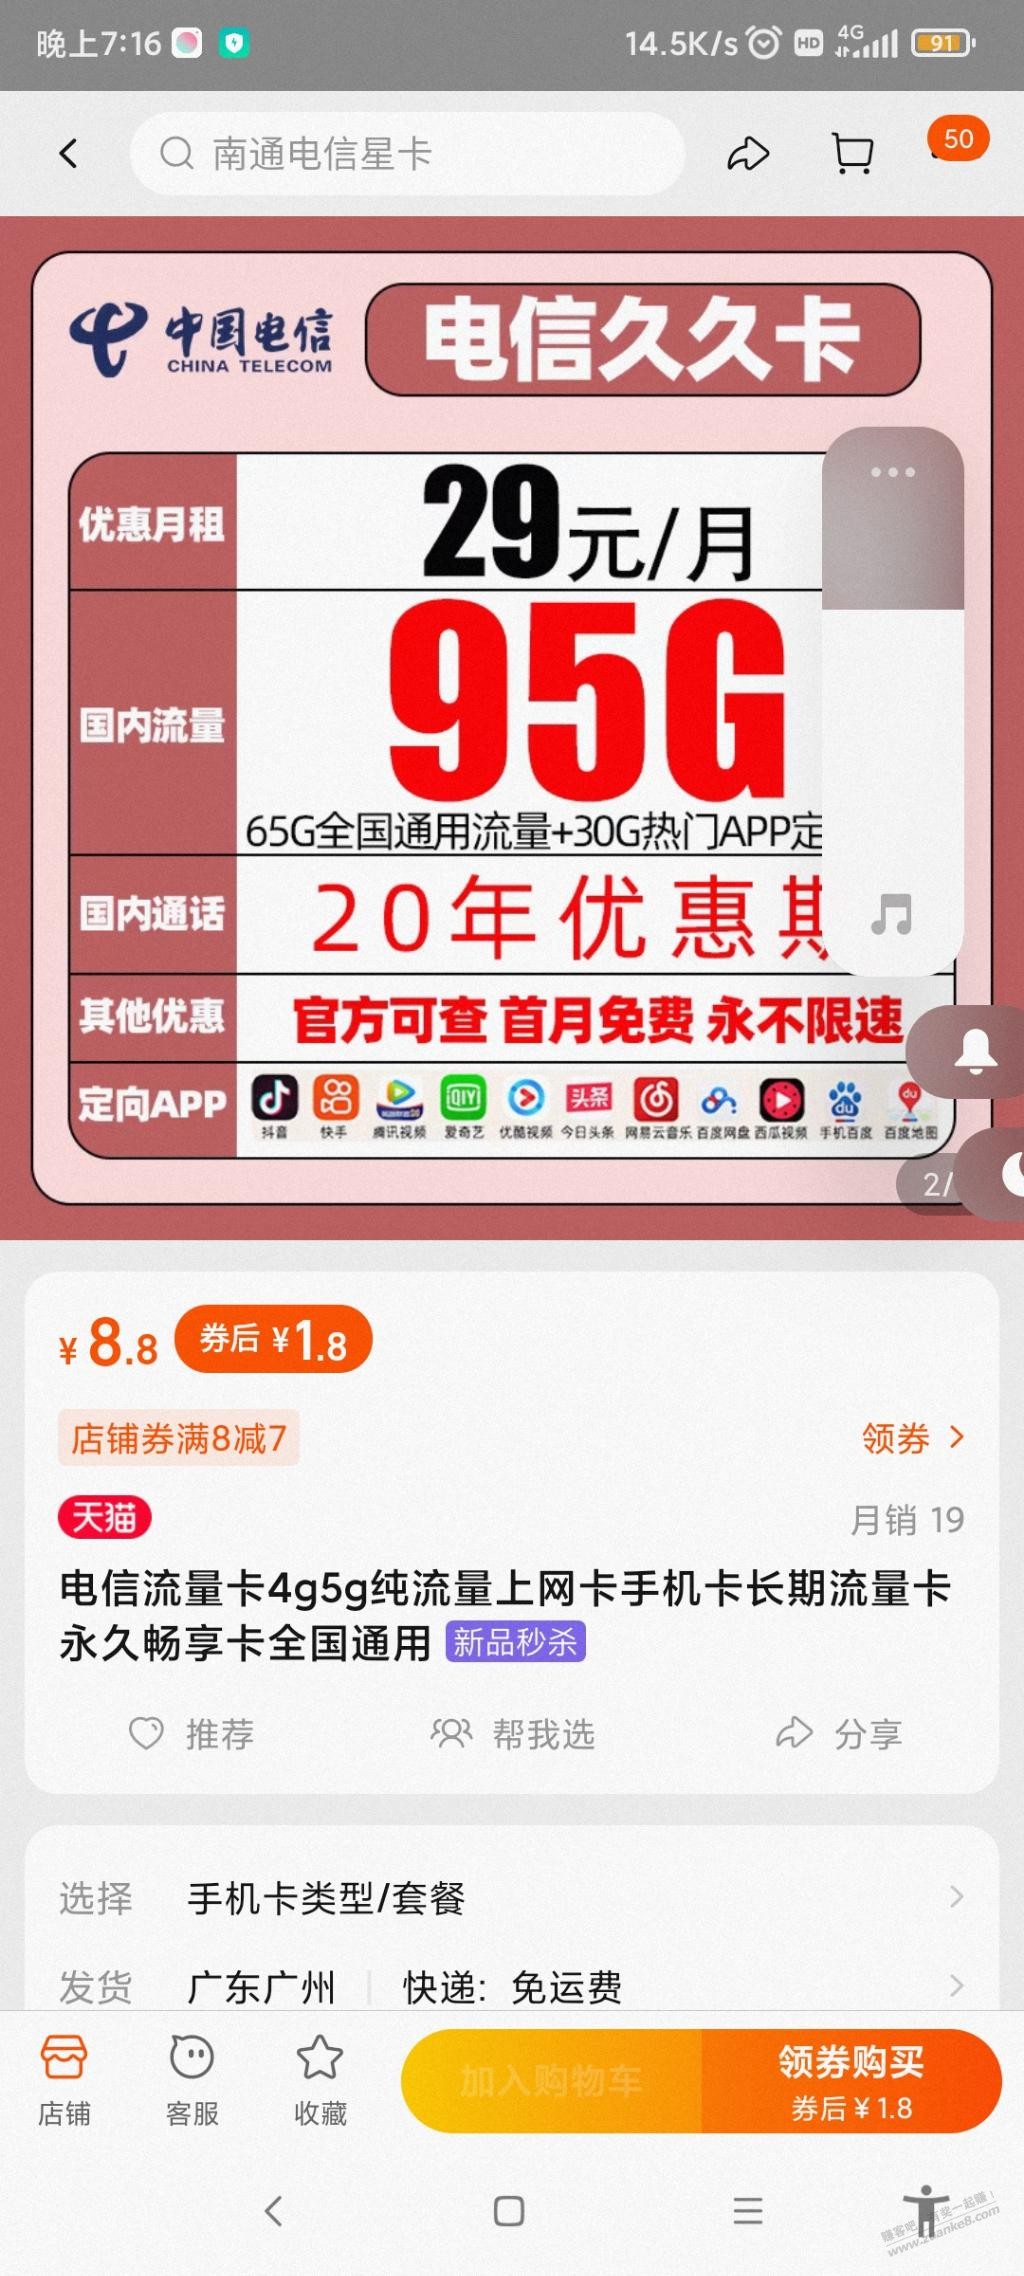 中國聯通4G+日租卡 (任性版) 1元800MB全國流量 可升級1GB全國流量 (卡歸屬地：深圳 ), 手提電話, 電話及其他裝置配件, Sim 卡 - Carousell